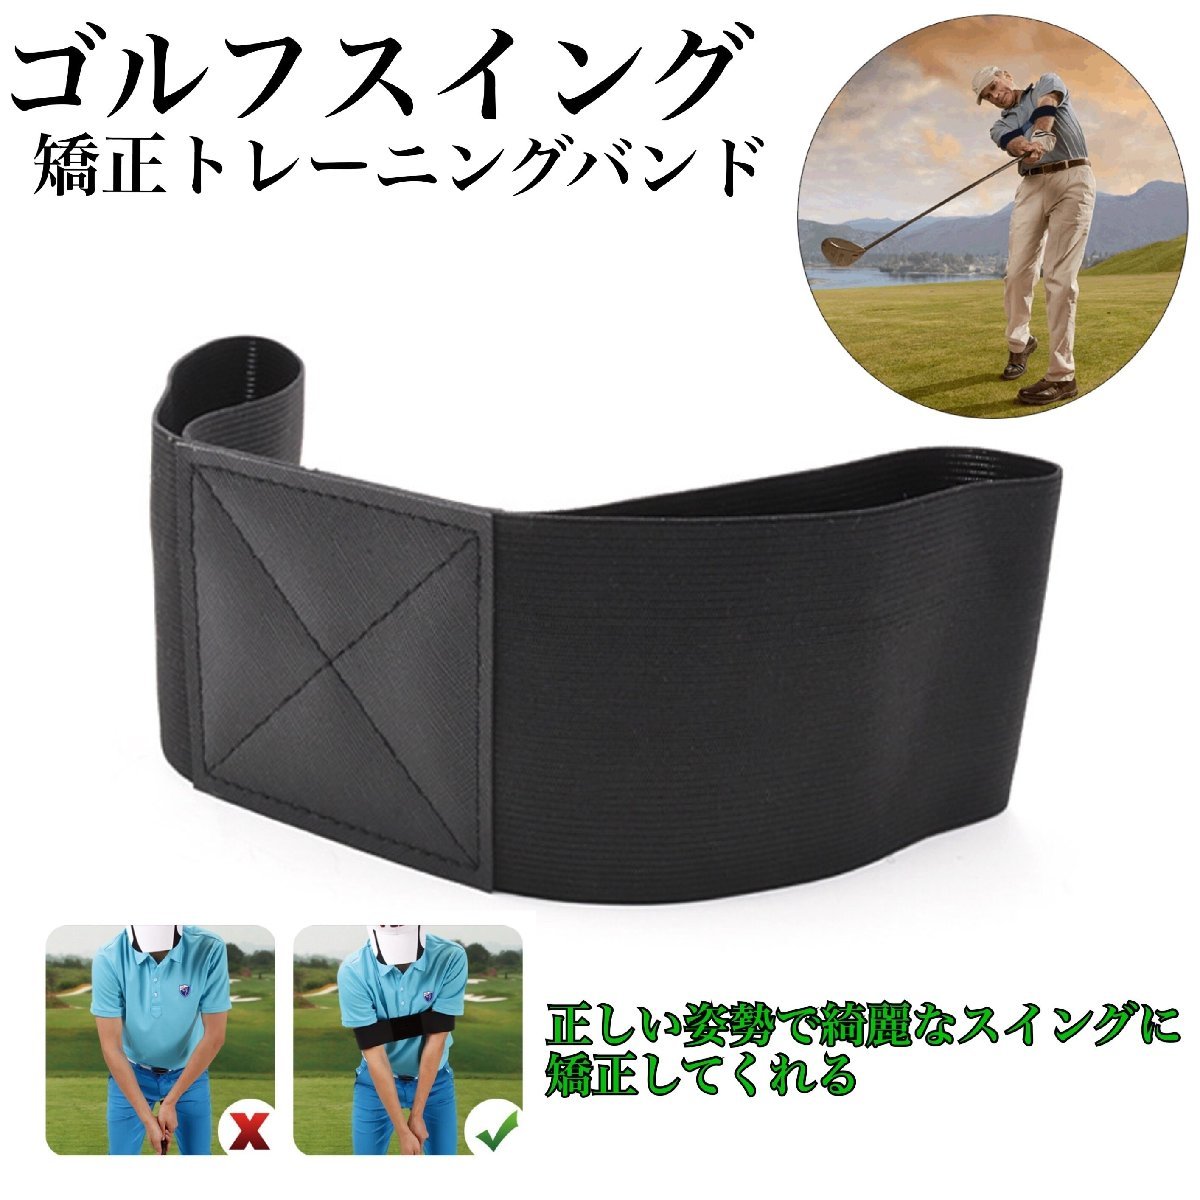 日本人気超絶の ゴルフスイング 矯正 ベルト 練習器具 ゴルフ用品 バンド 姿勢改善 素振り 肘